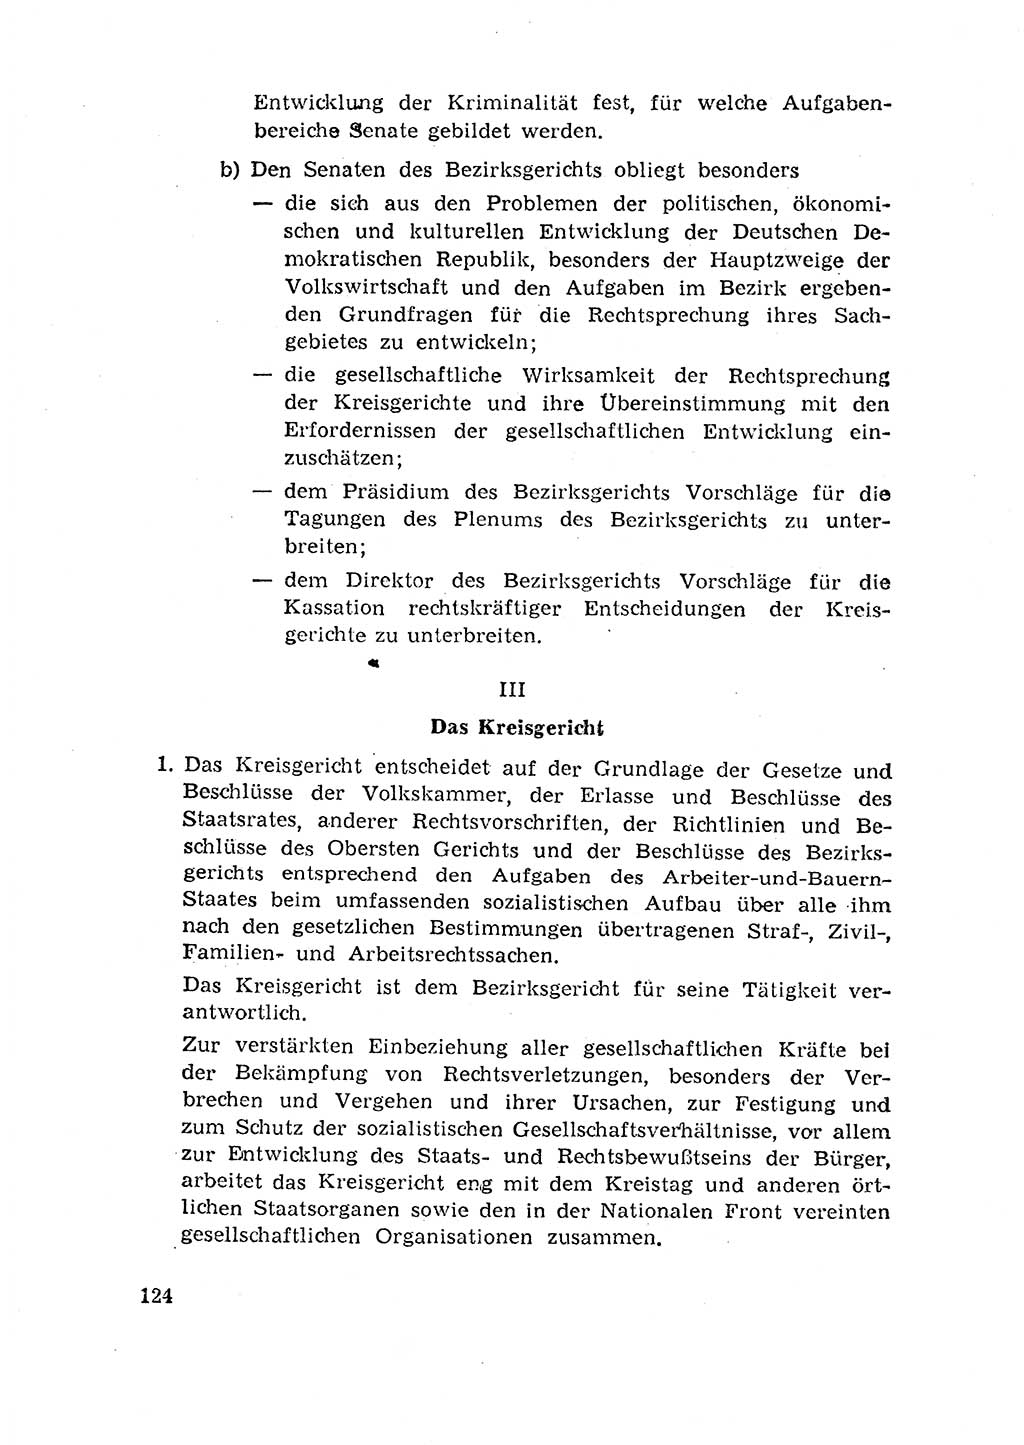 Rechtspflegeerlaß [Deutsche Demokratische Republik (DDR)] 1963, Seite 124 (R.-Pfl.-Erl. DDR 1963, S. 124)